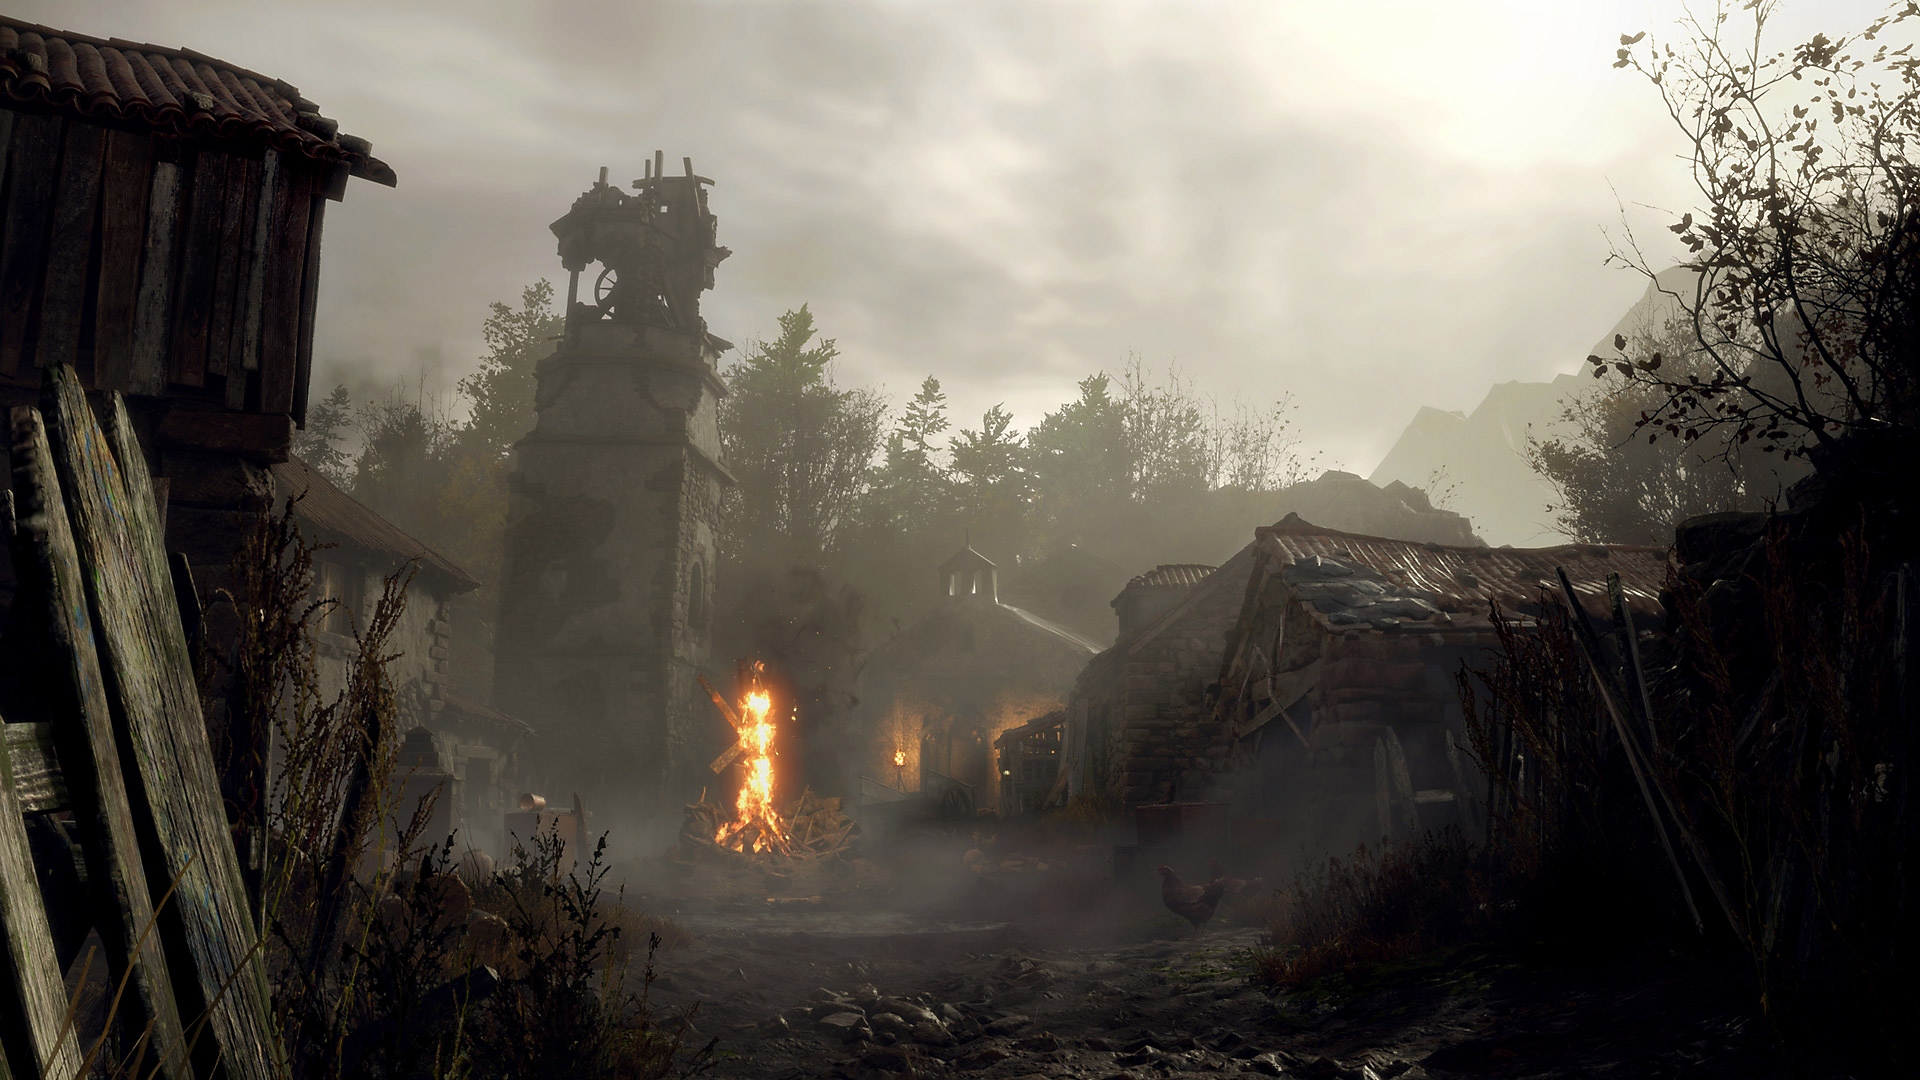 Istantanea della schermata di Resident Evil 4 che mostra un crocifisso in fiamme in un villaggio polveroso e fatiscente.